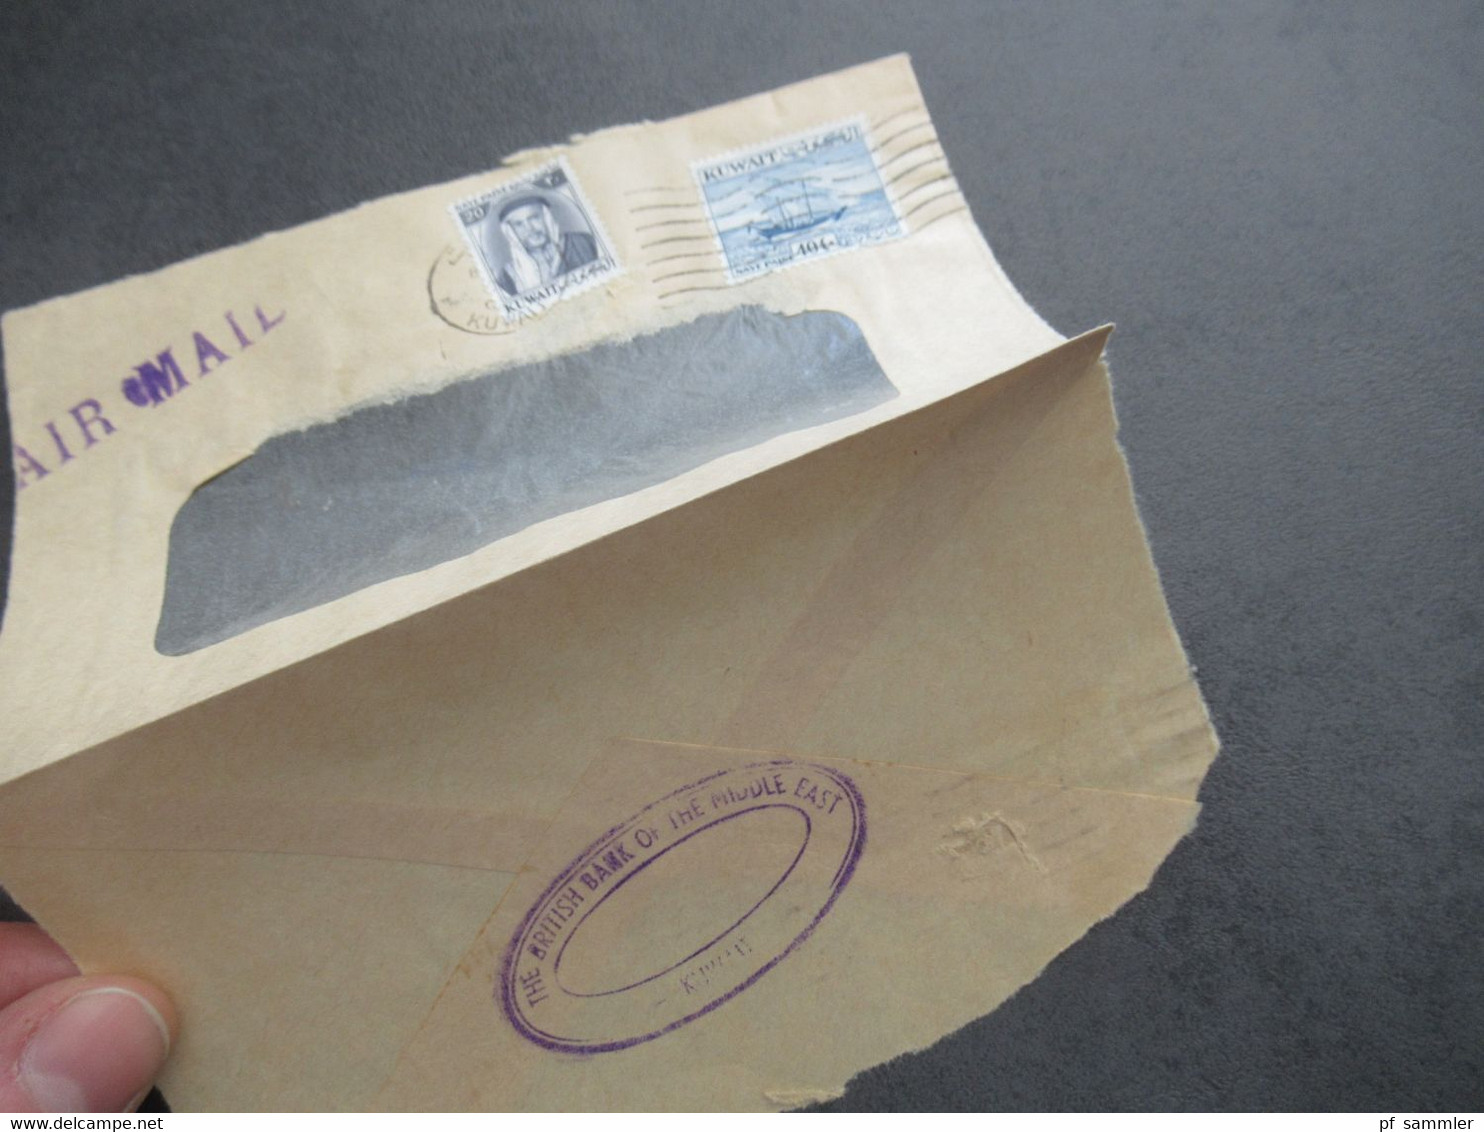 Kuwait 1950er Jahre ?! Air Mail / Luftpost Beleg Umschlag Stempel The British Bank Of The Middle East Kuwait - Kuwait